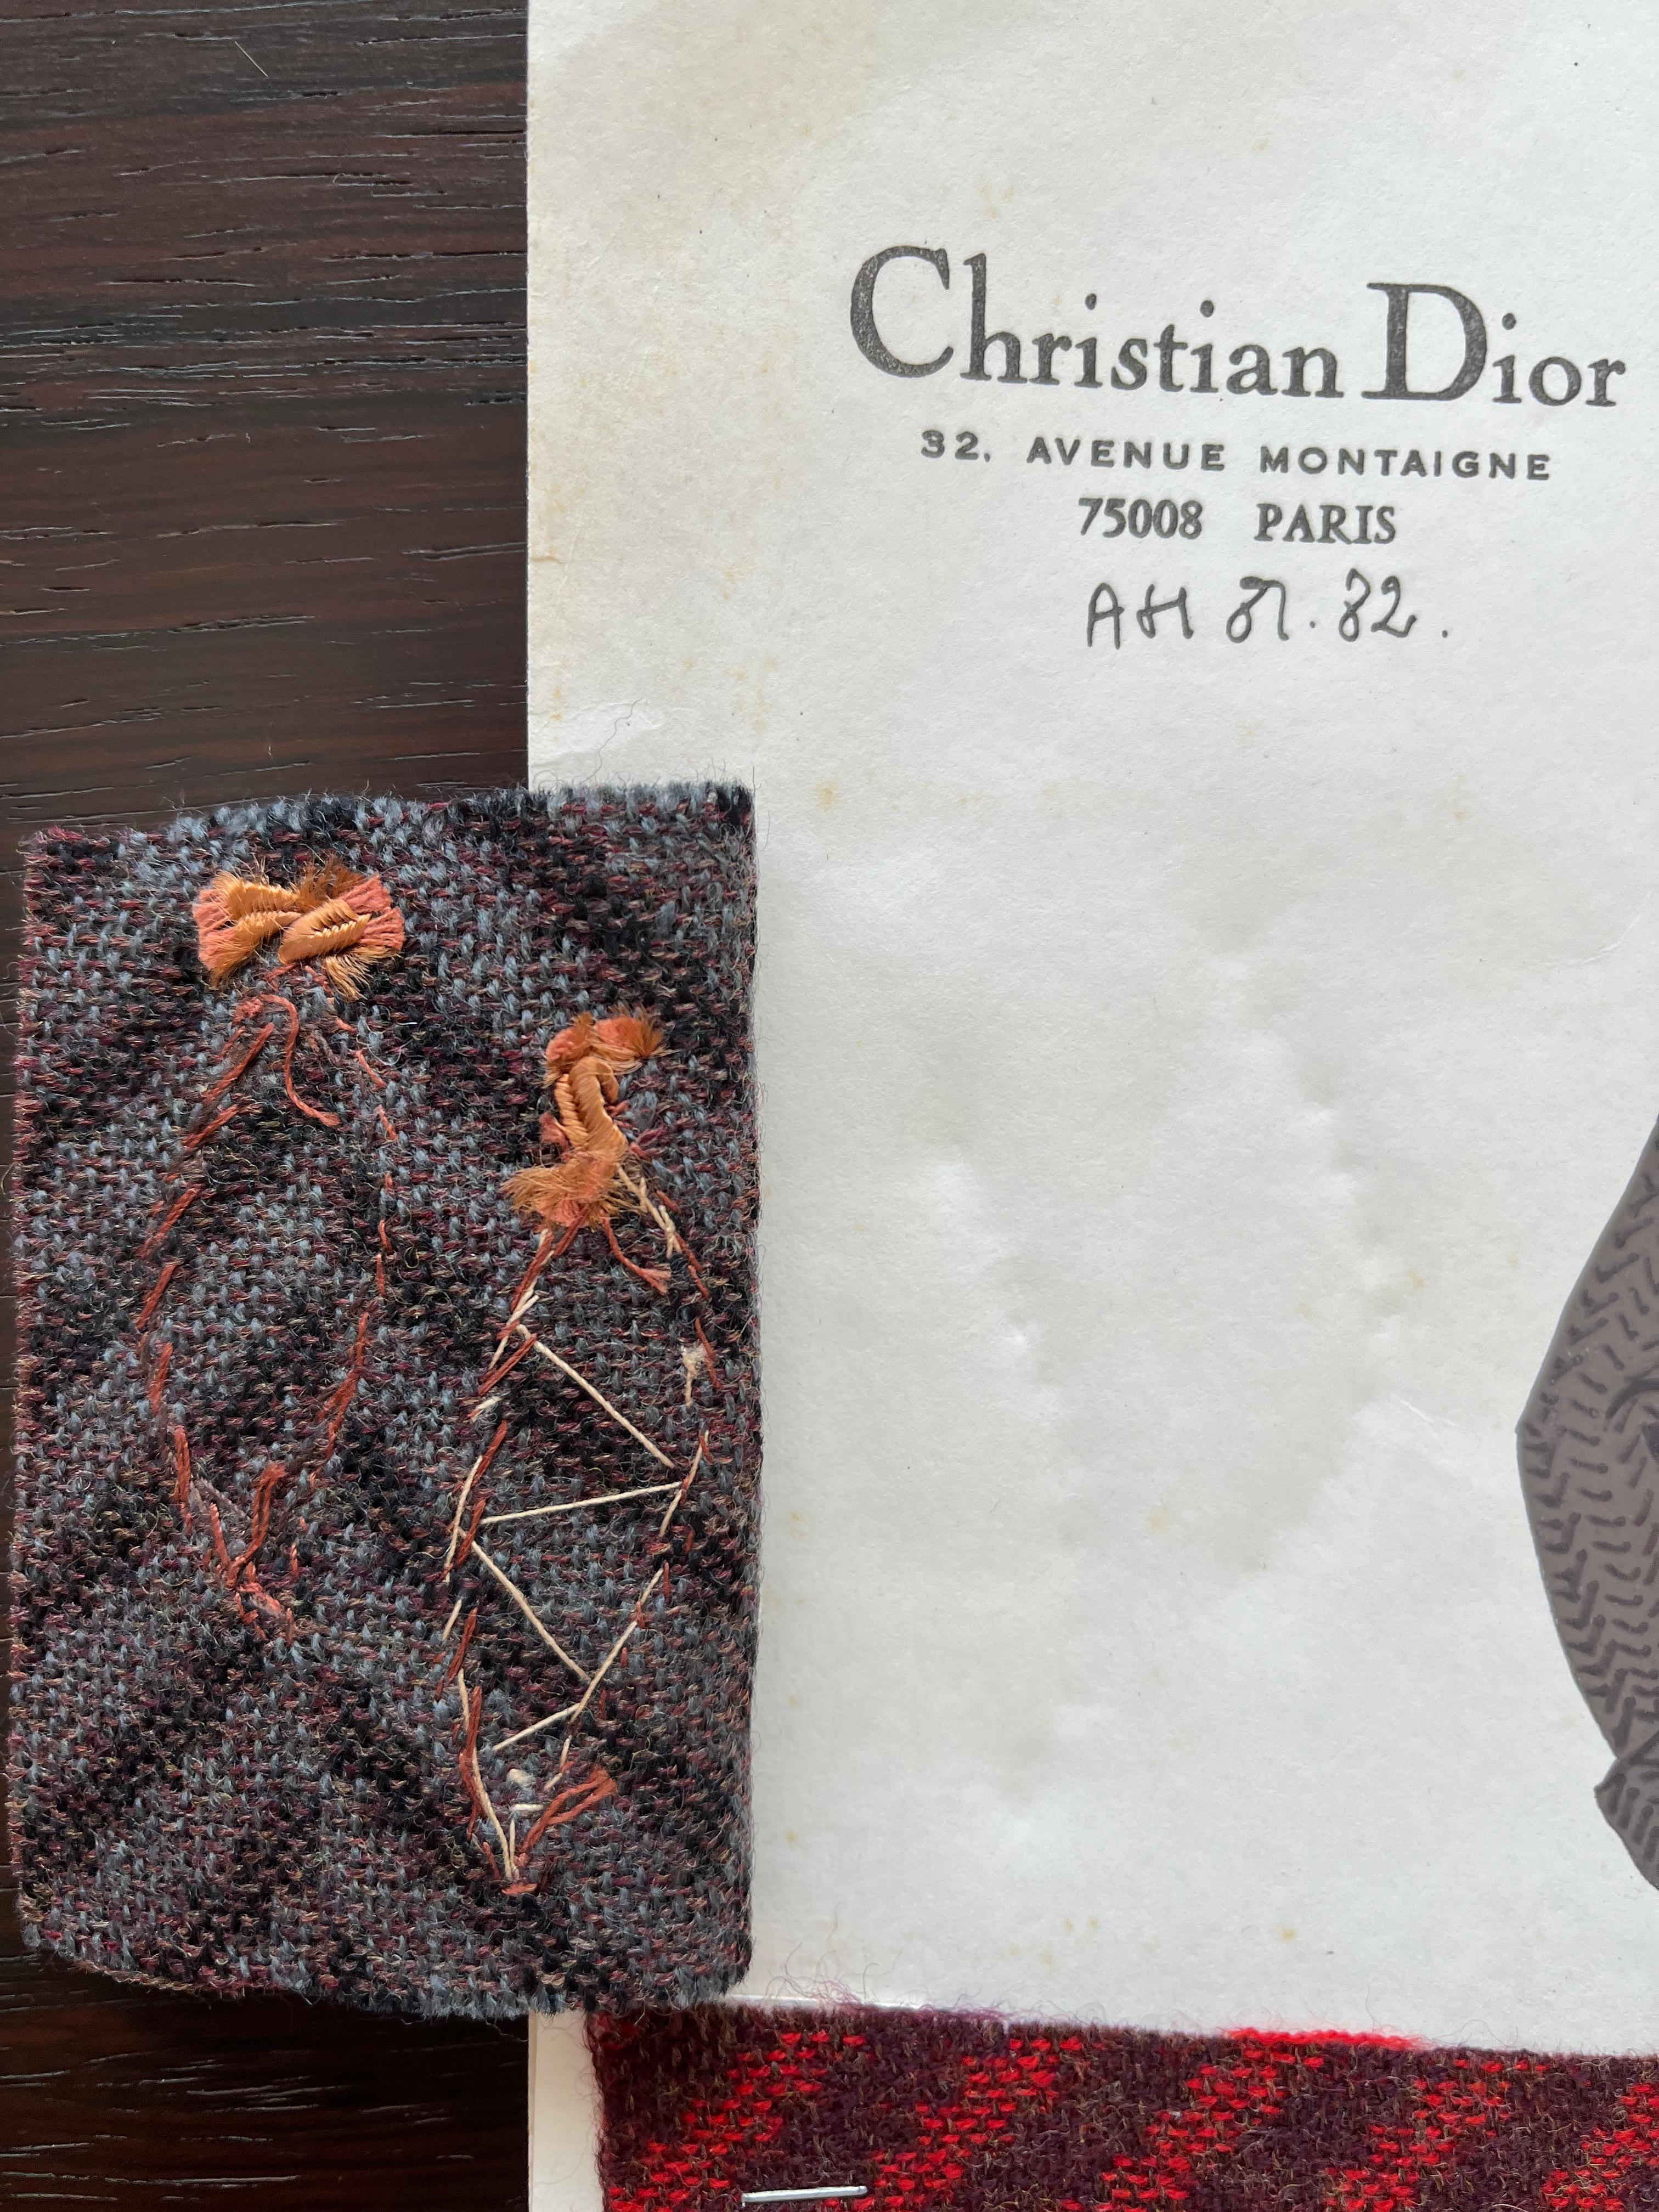 Modetafel mit Gouache veredelt, mit Stoffmuster eines Kleides aus dem Maison Christian Dior, 1981-82.
Handschriftliche Aufschrift: 